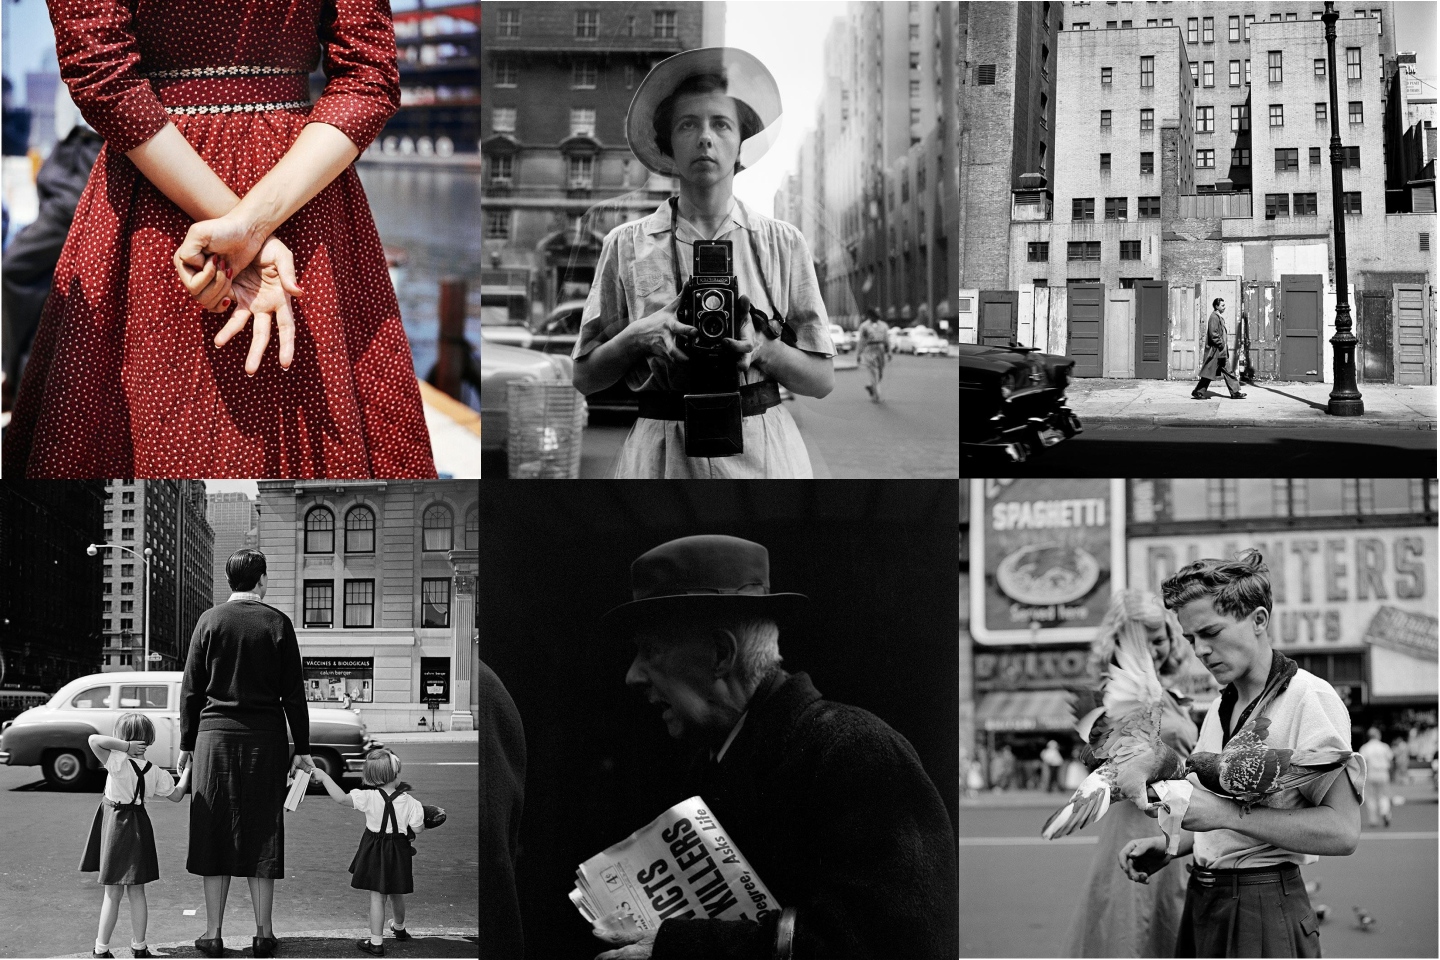 Вивиан Майер: самый загадочный фотограф XX века